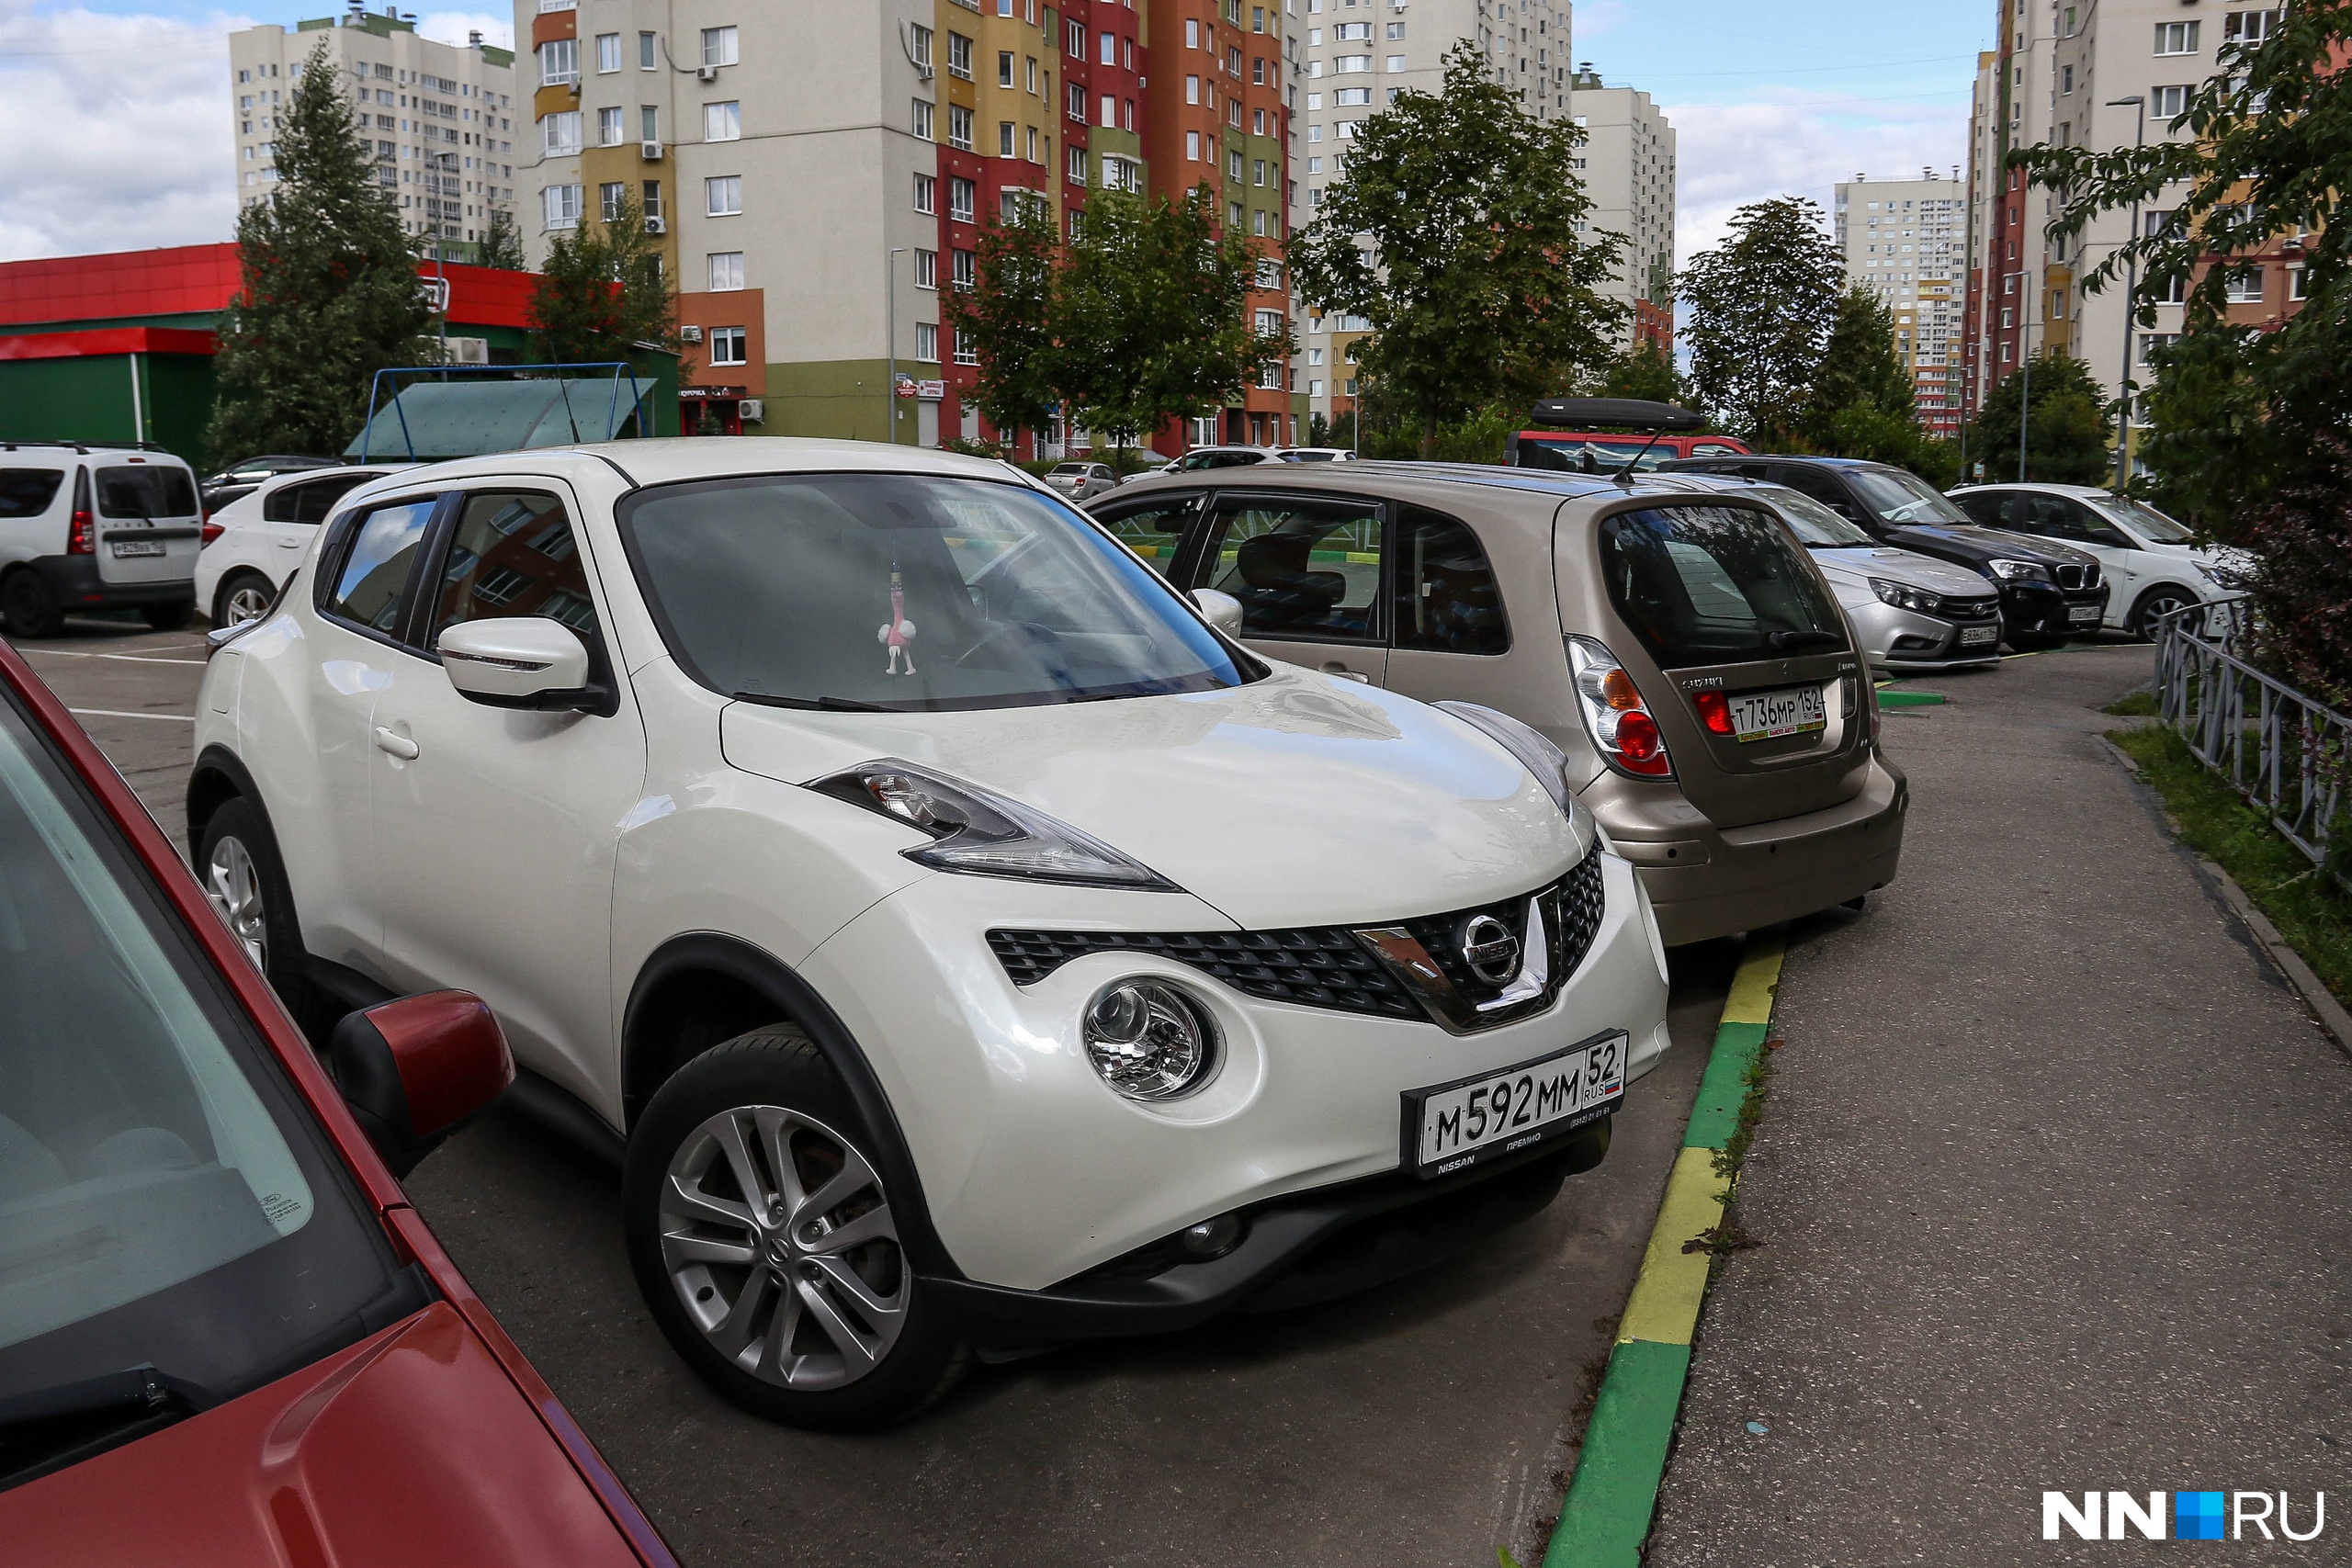 Короли парковок. Автомобилистов начали штрафовать за стоянку в ЖК Нижнего Новгорода